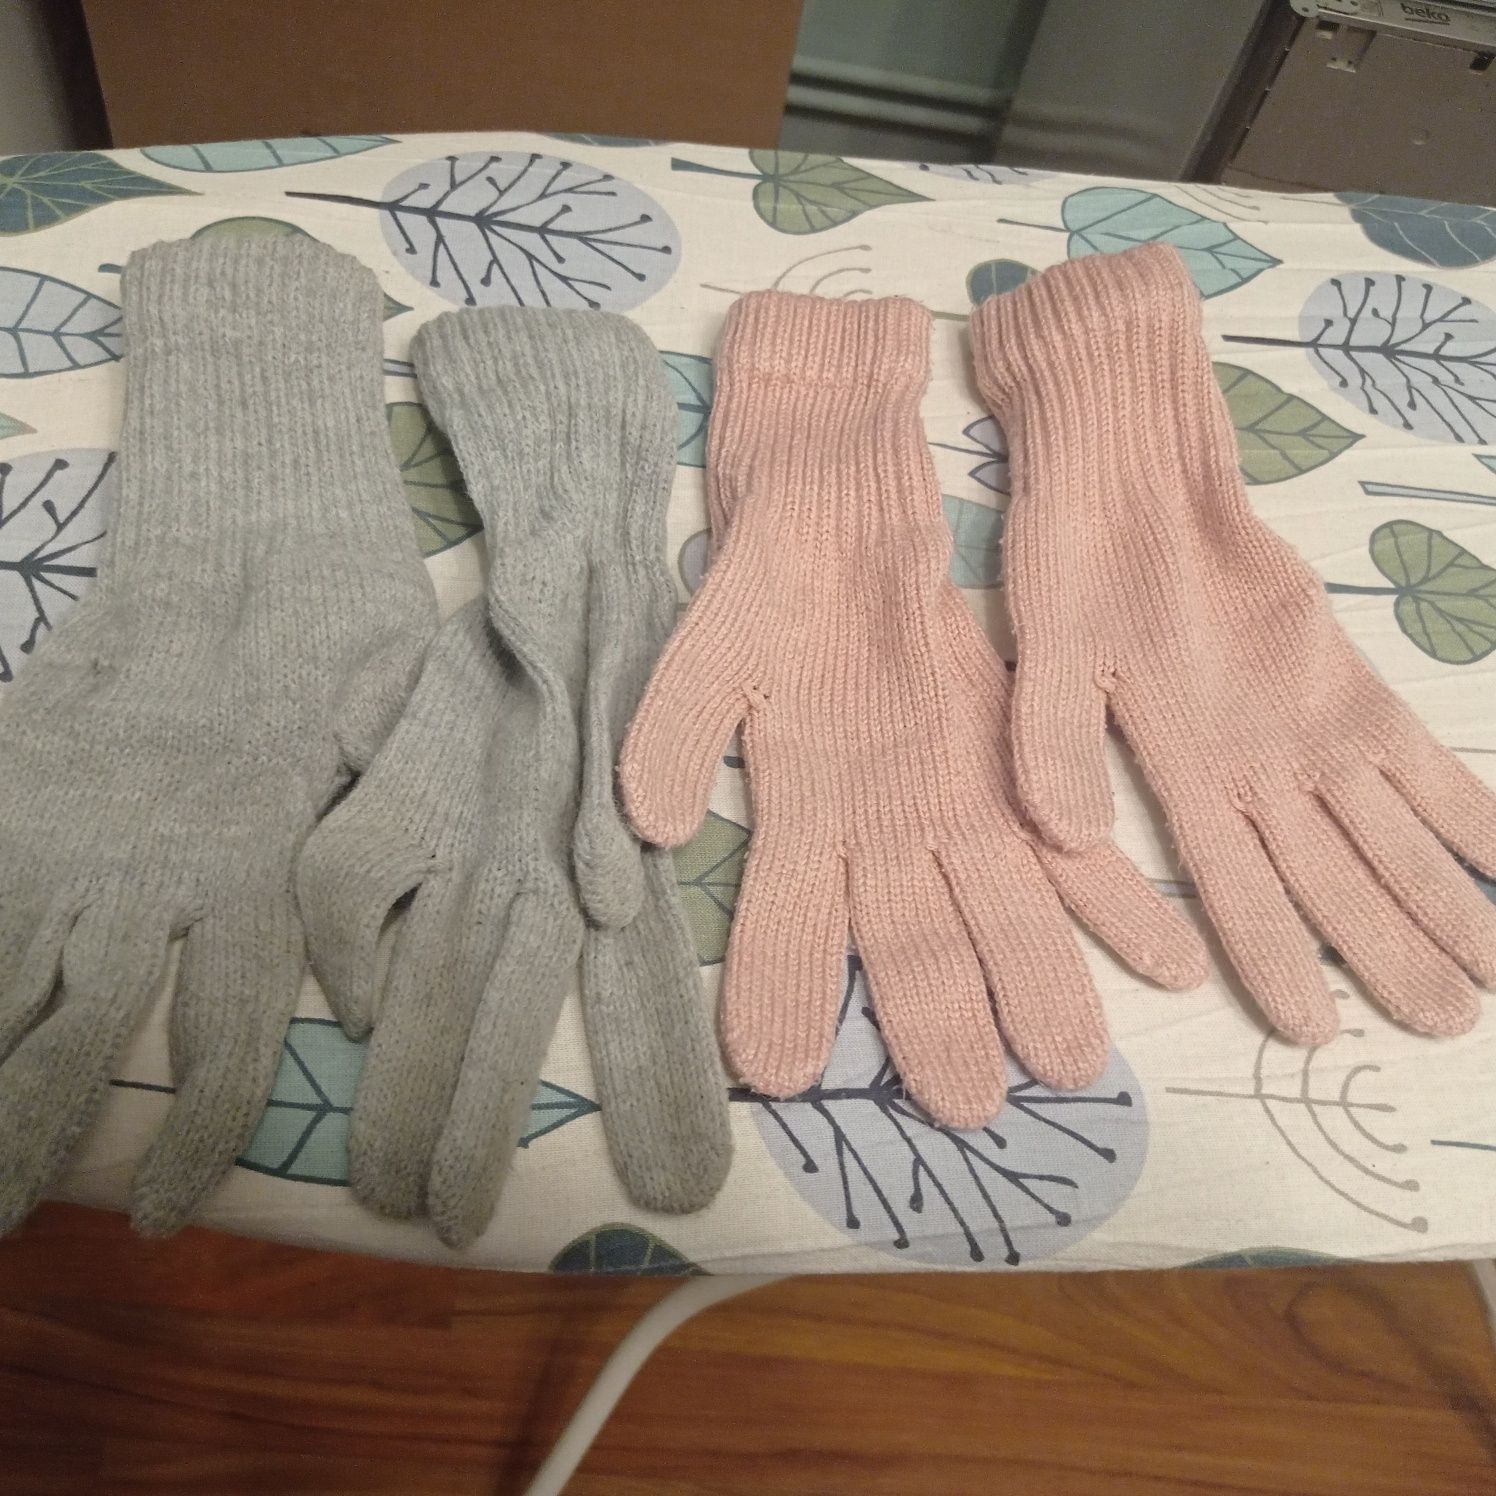 Rękawiczki zimowe, damskie. Zestaw 2 pary.